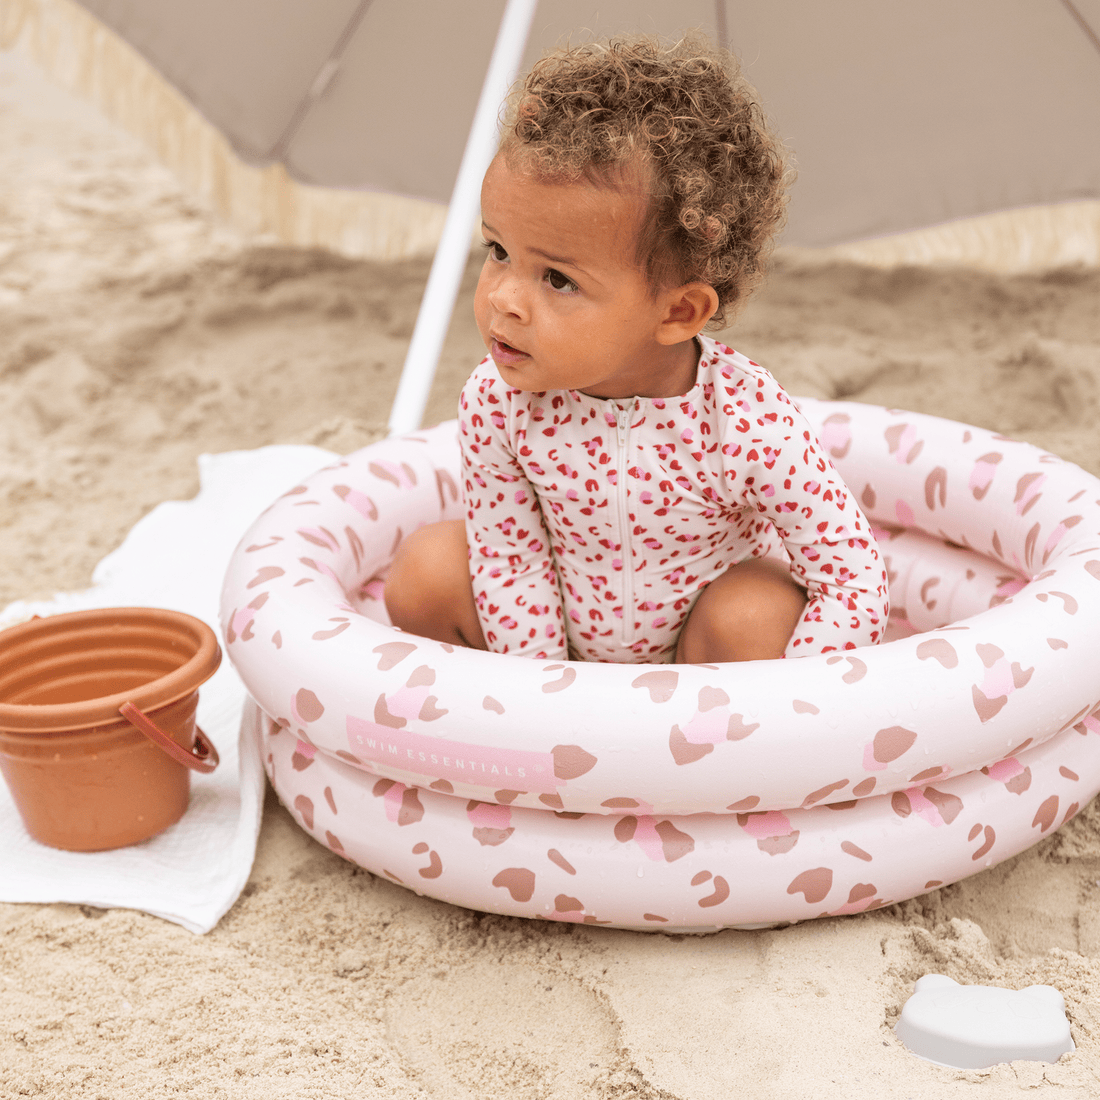 baby-zwembad-old-pink-panterprint-60-cm-swim-essentials-1